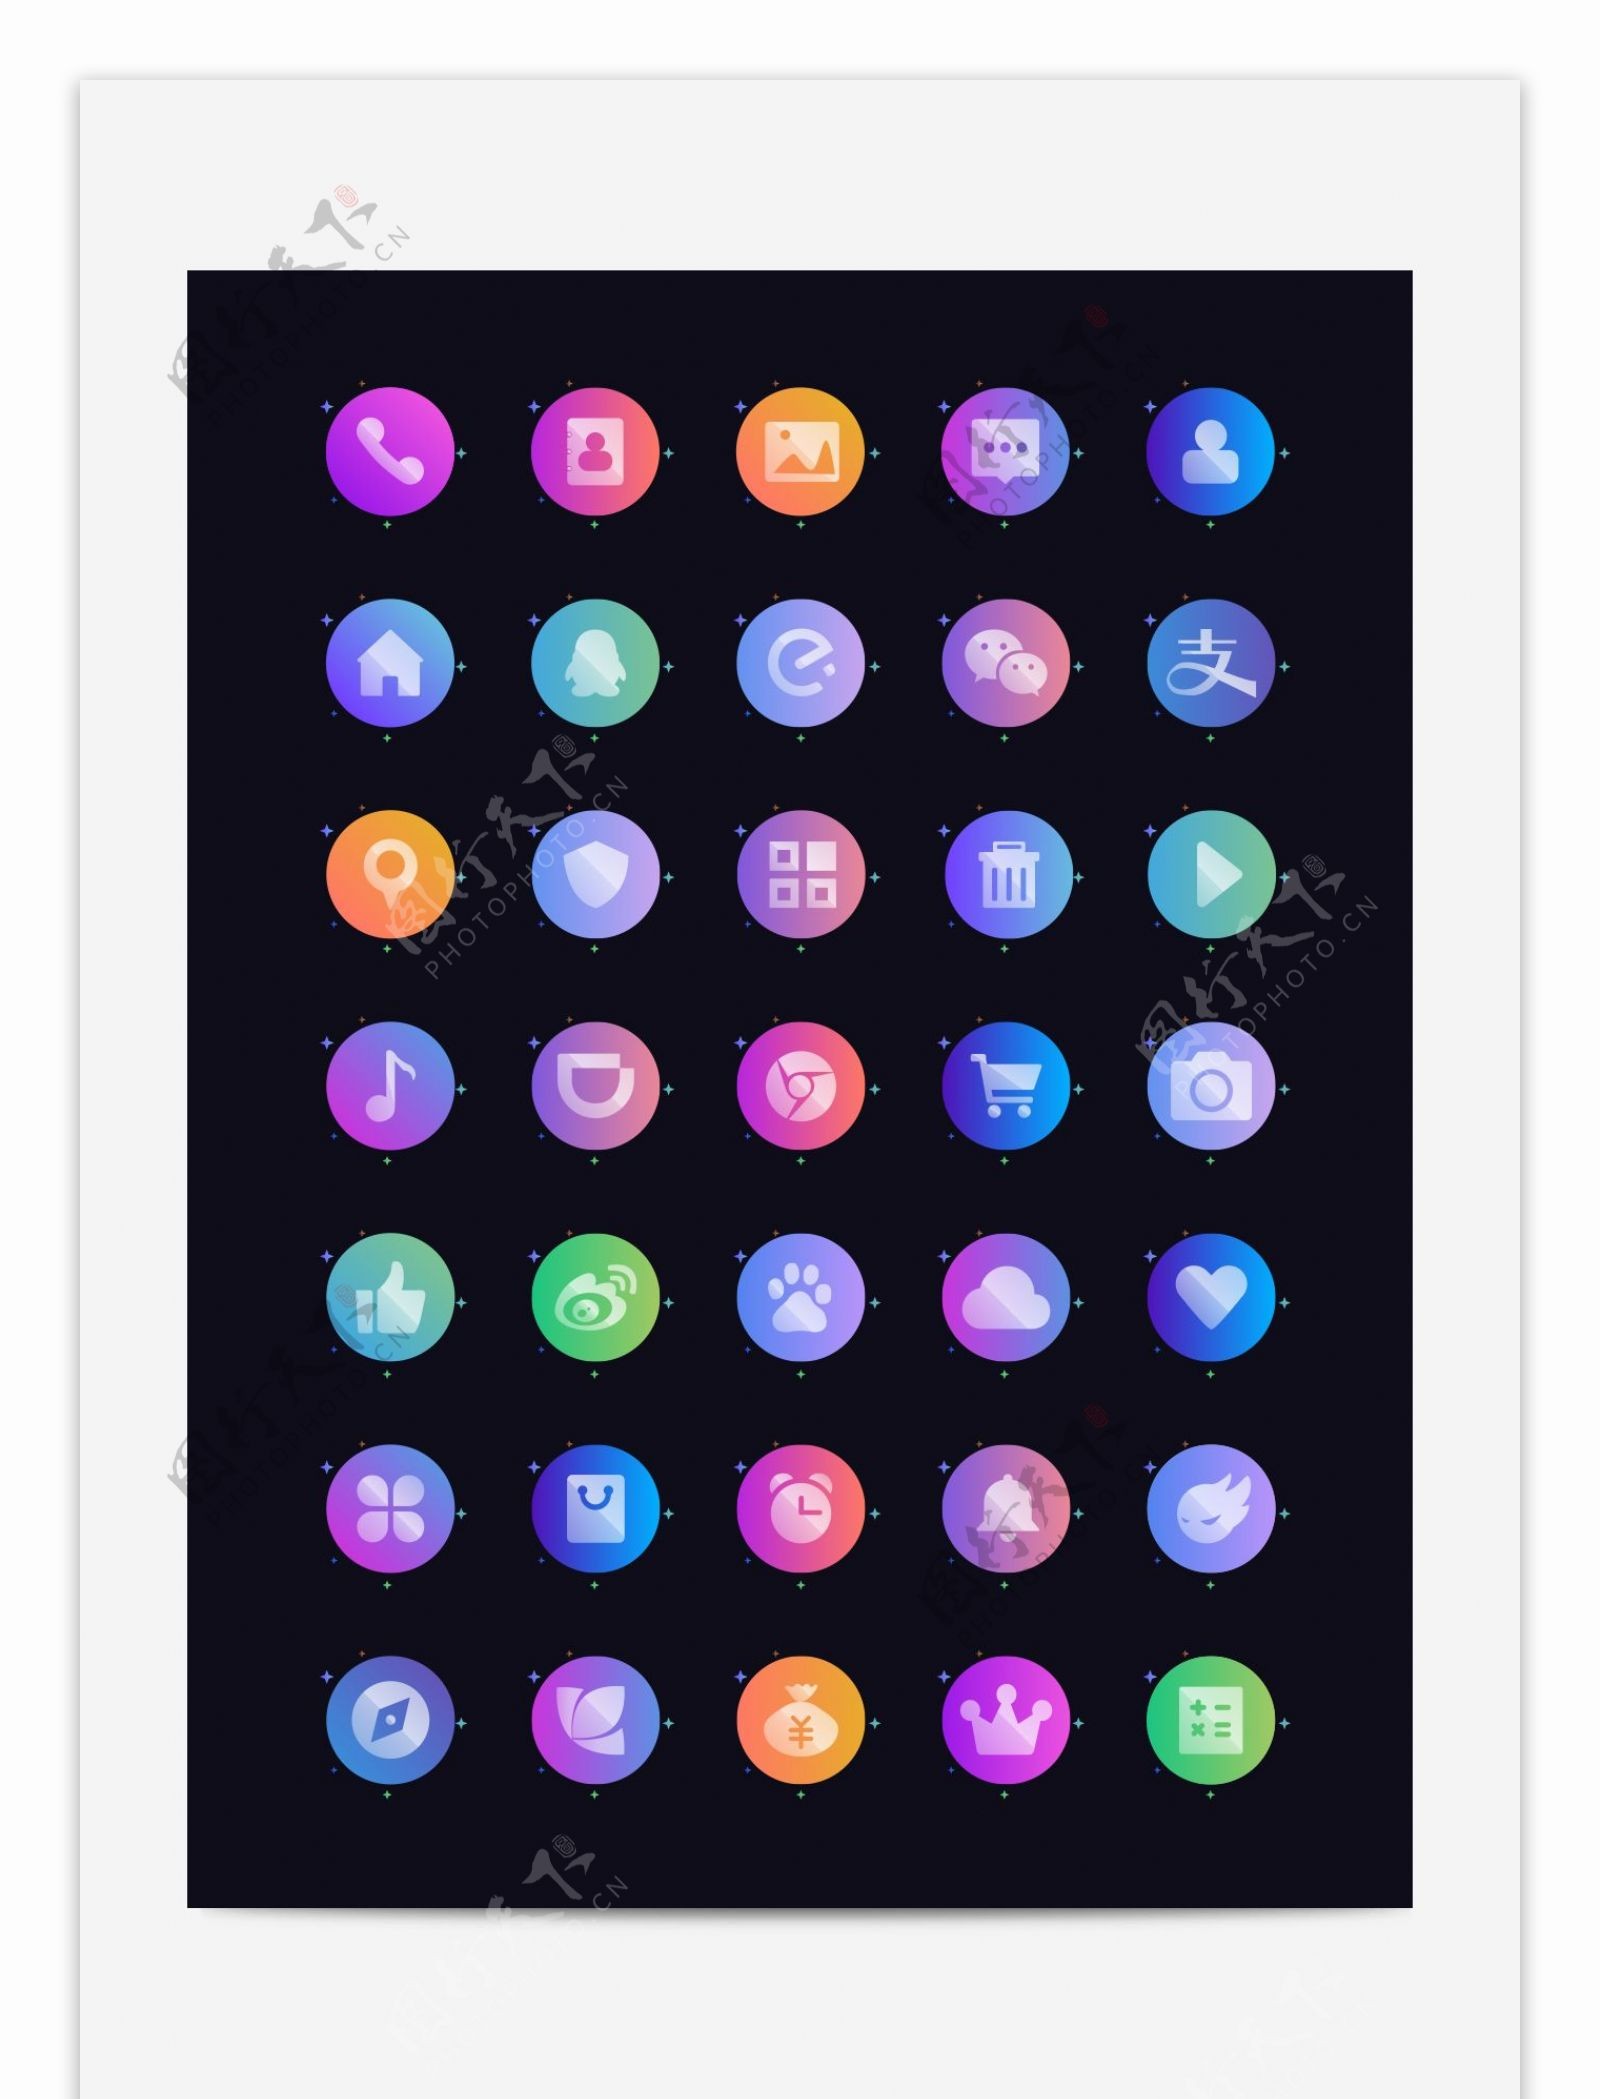 彩色微渐变手机主题矢量图标